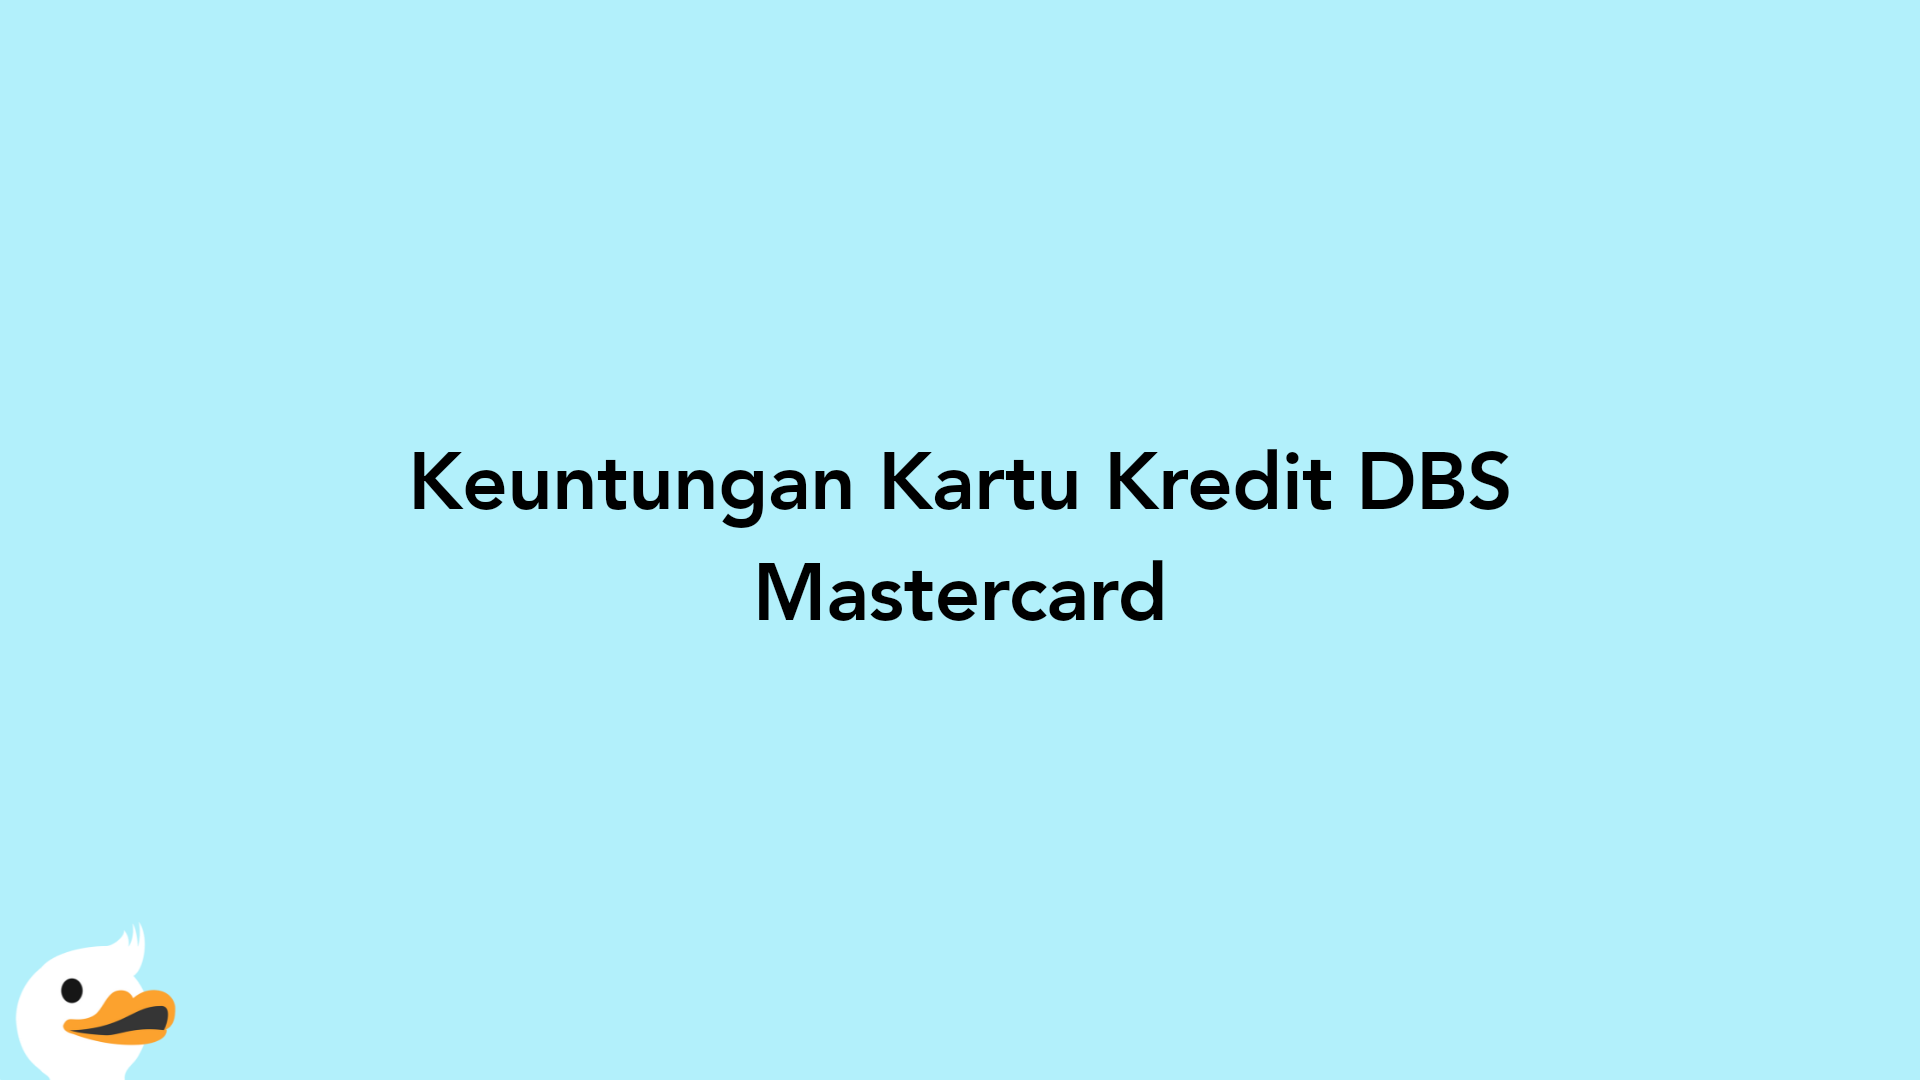 Keuntungan Kartu Kredit DBS Mastercard